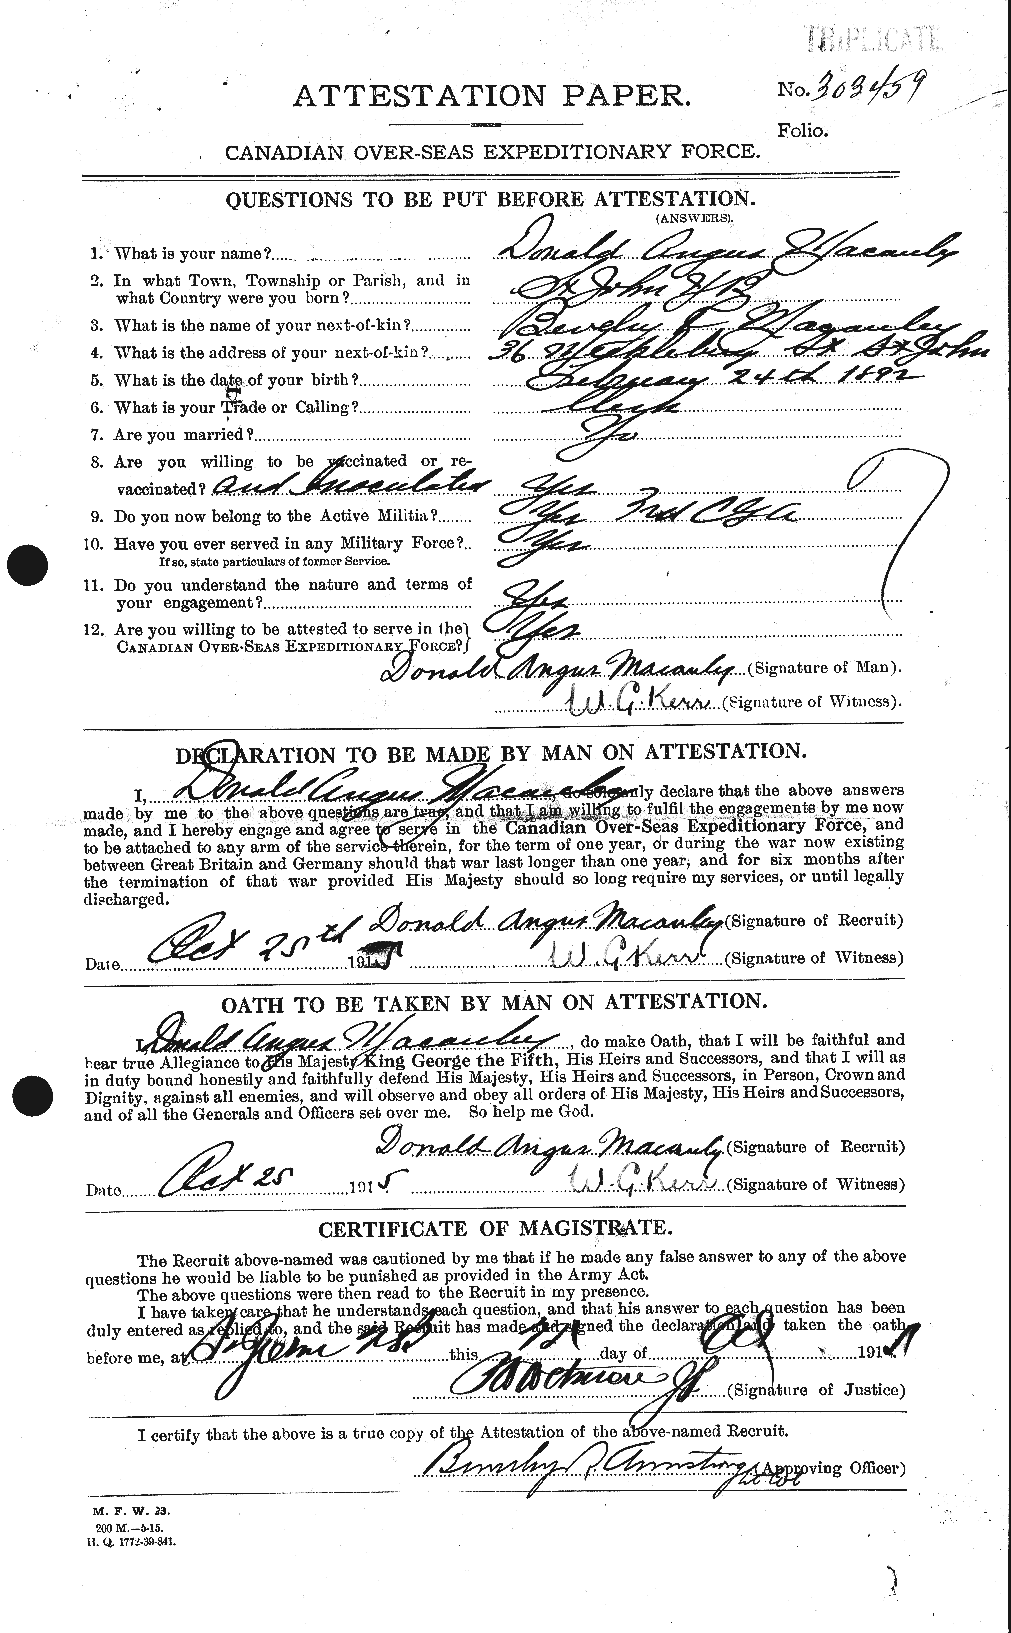 Dossiers du Personnel de la Première Guerre mondiale - CEC 130351a